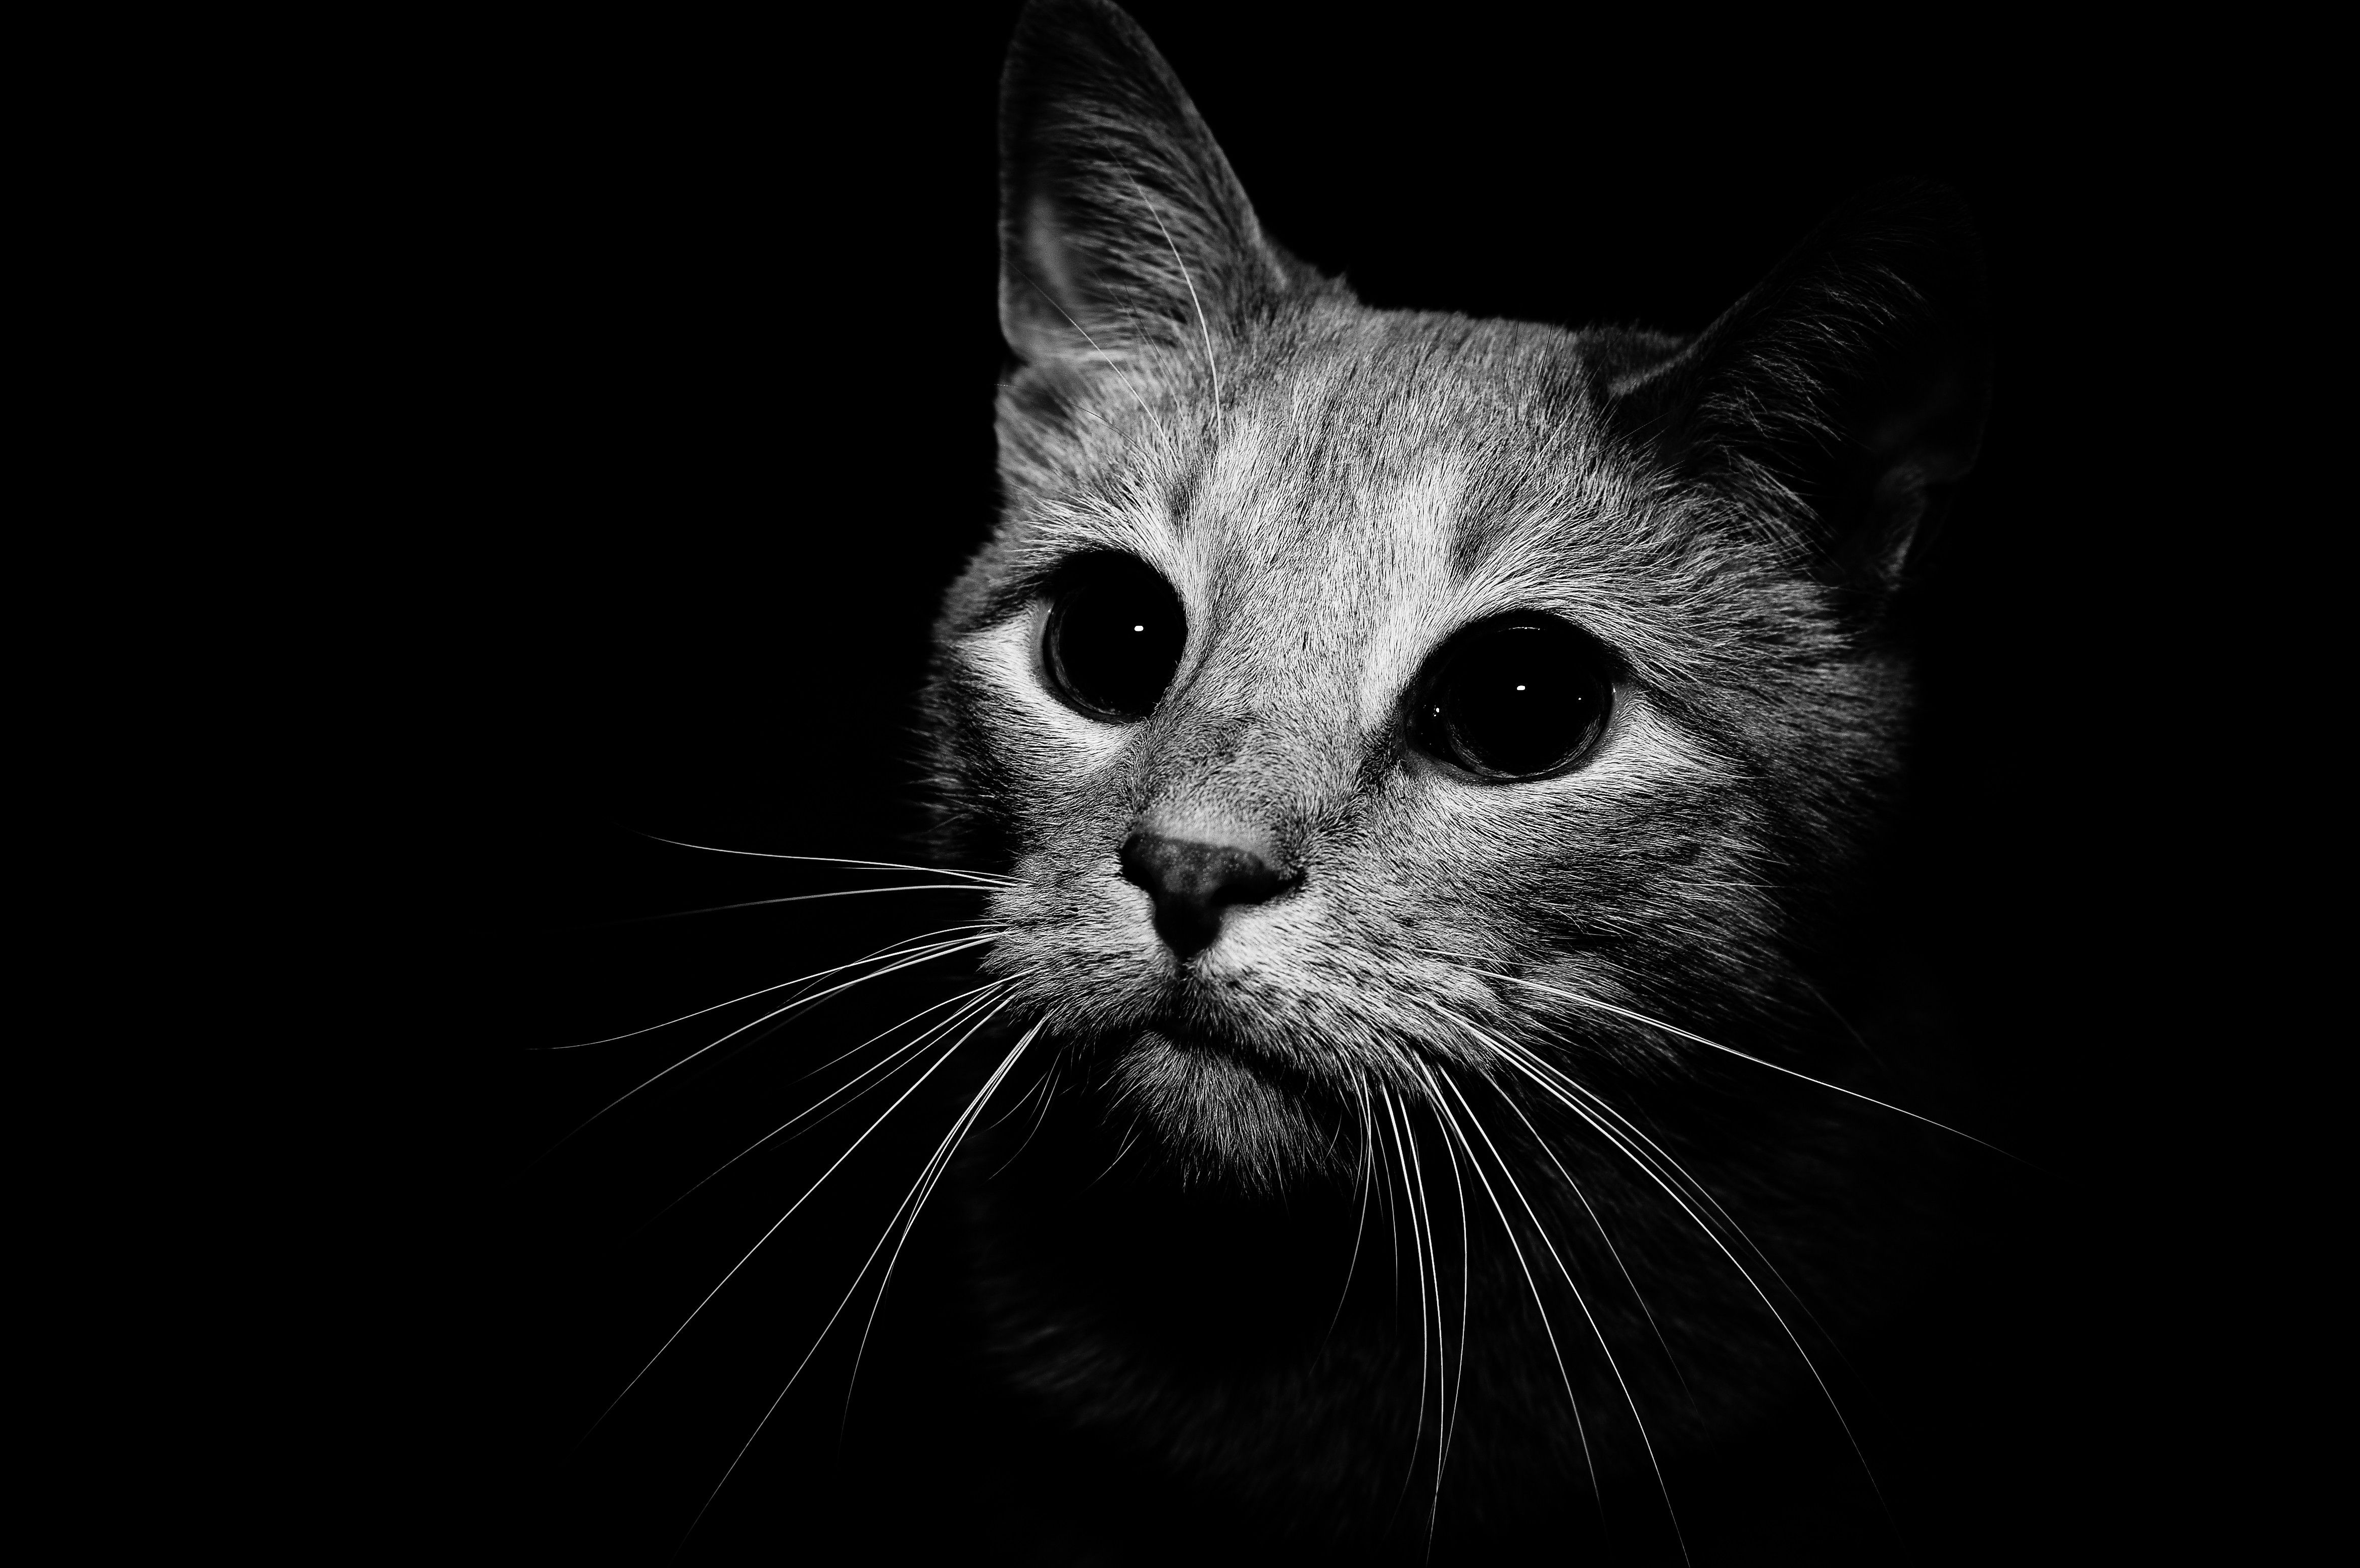 흑백 고양이 벽지,고양이,구레나룻,검정,중소형 고양이,검정색과 흰색